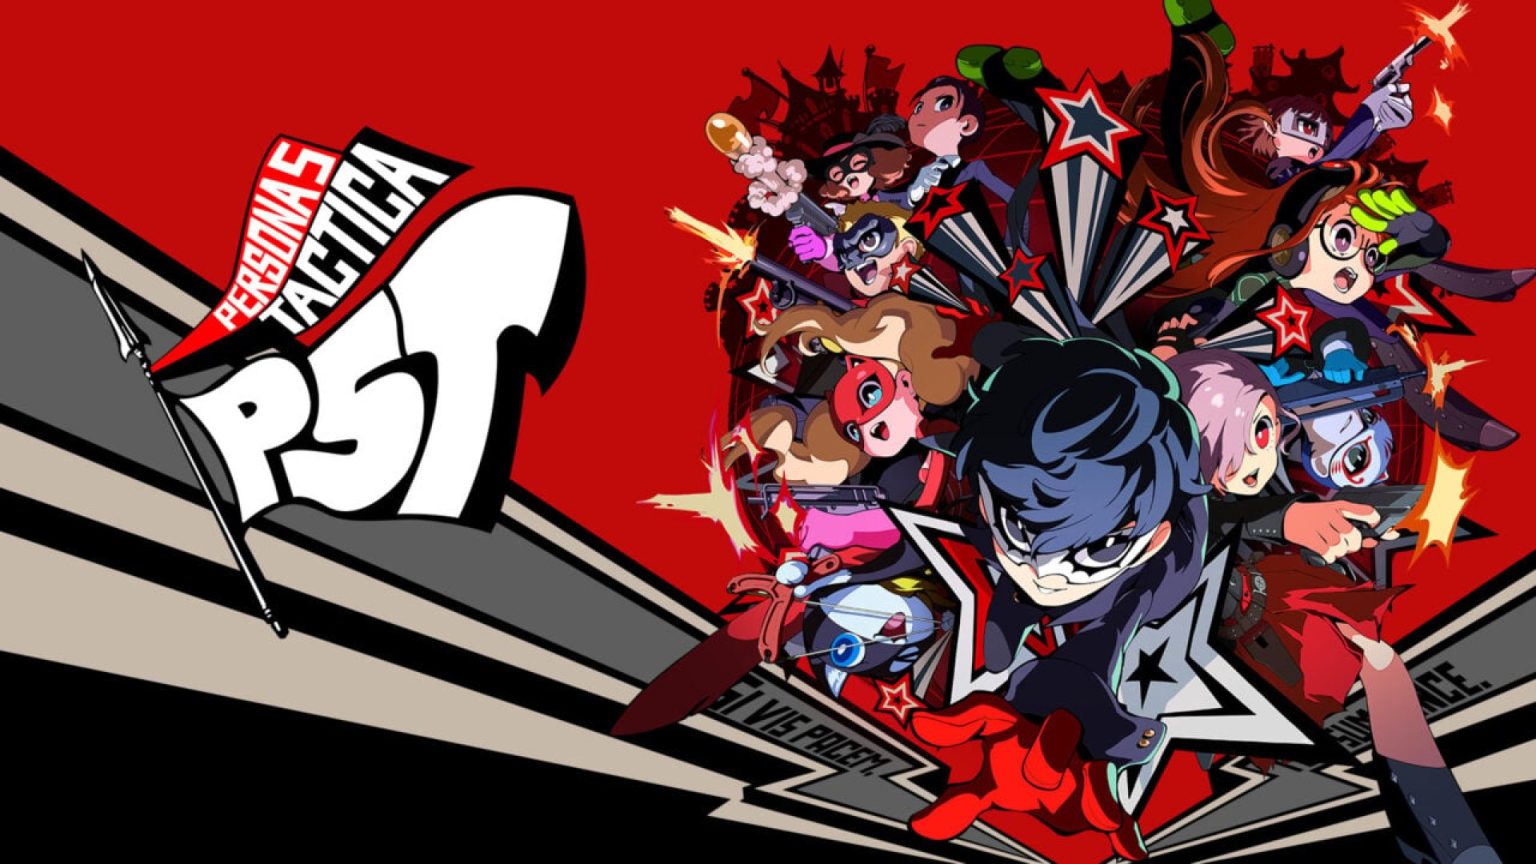 Los desarrolladores de Persona 5 Tactica han publicado un nuevo tráiler que muestra a tres personajes: Joker, Morgana y Erin.